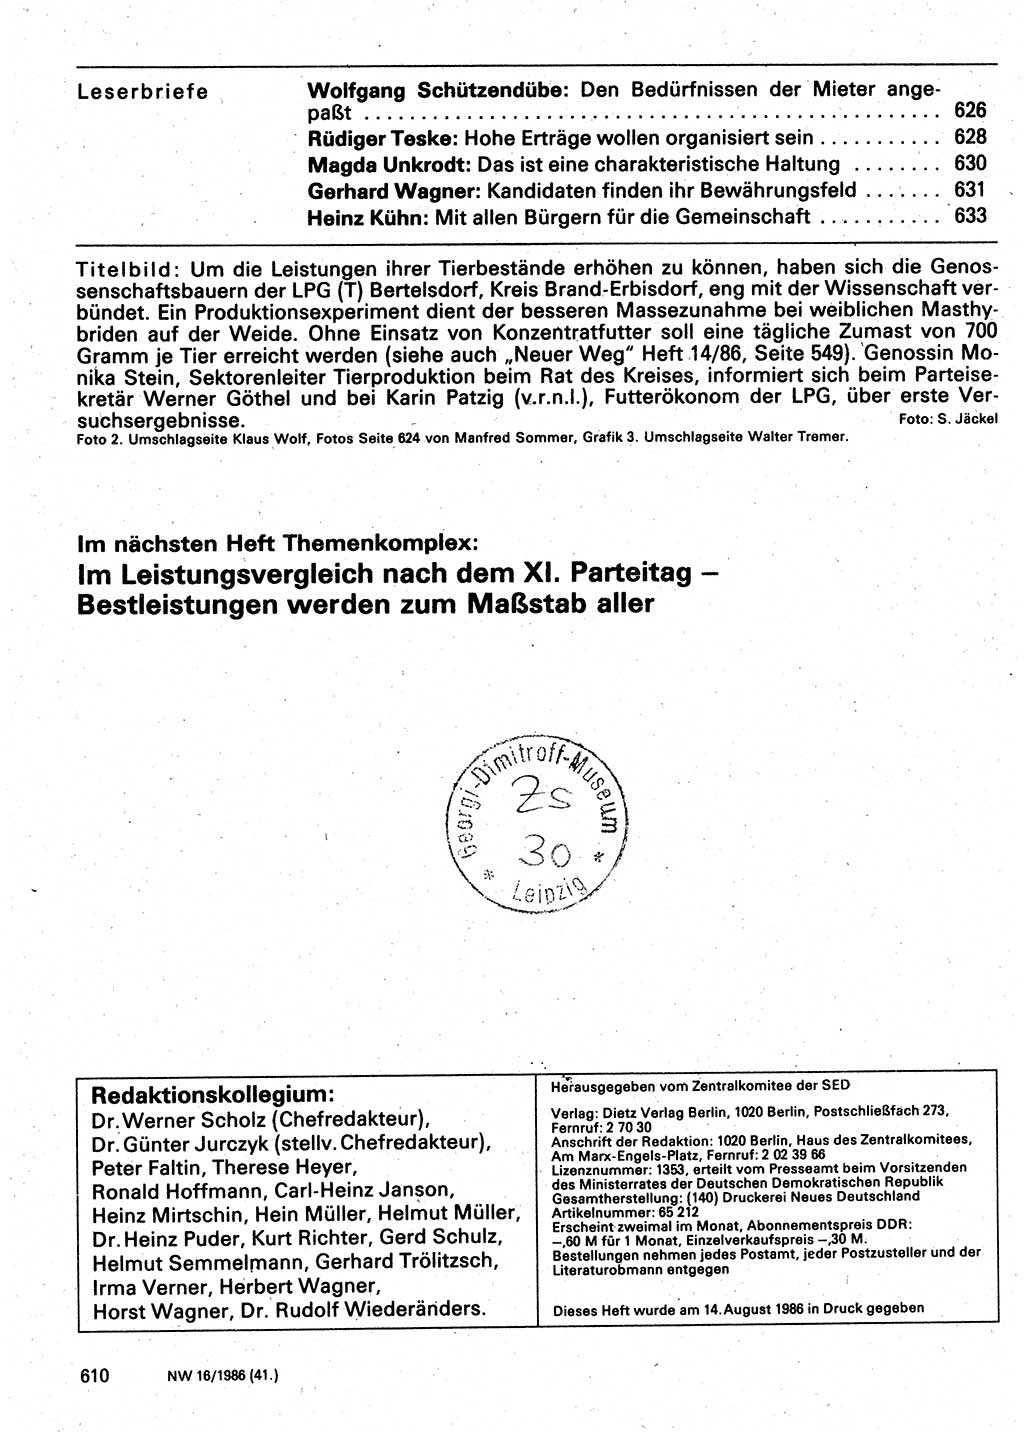 Neuer Weg (NW), Organ des Zentralkomitees (ZK) der SED (Sozialistische Einheitspartei Deutschlands) für Fragen des Parteilebens, 41. Jahrgang [Deutsche Demokratische Republik (DDR)] 1986, Seite 610 (NW ZK SED DDR 1986, S. 610)